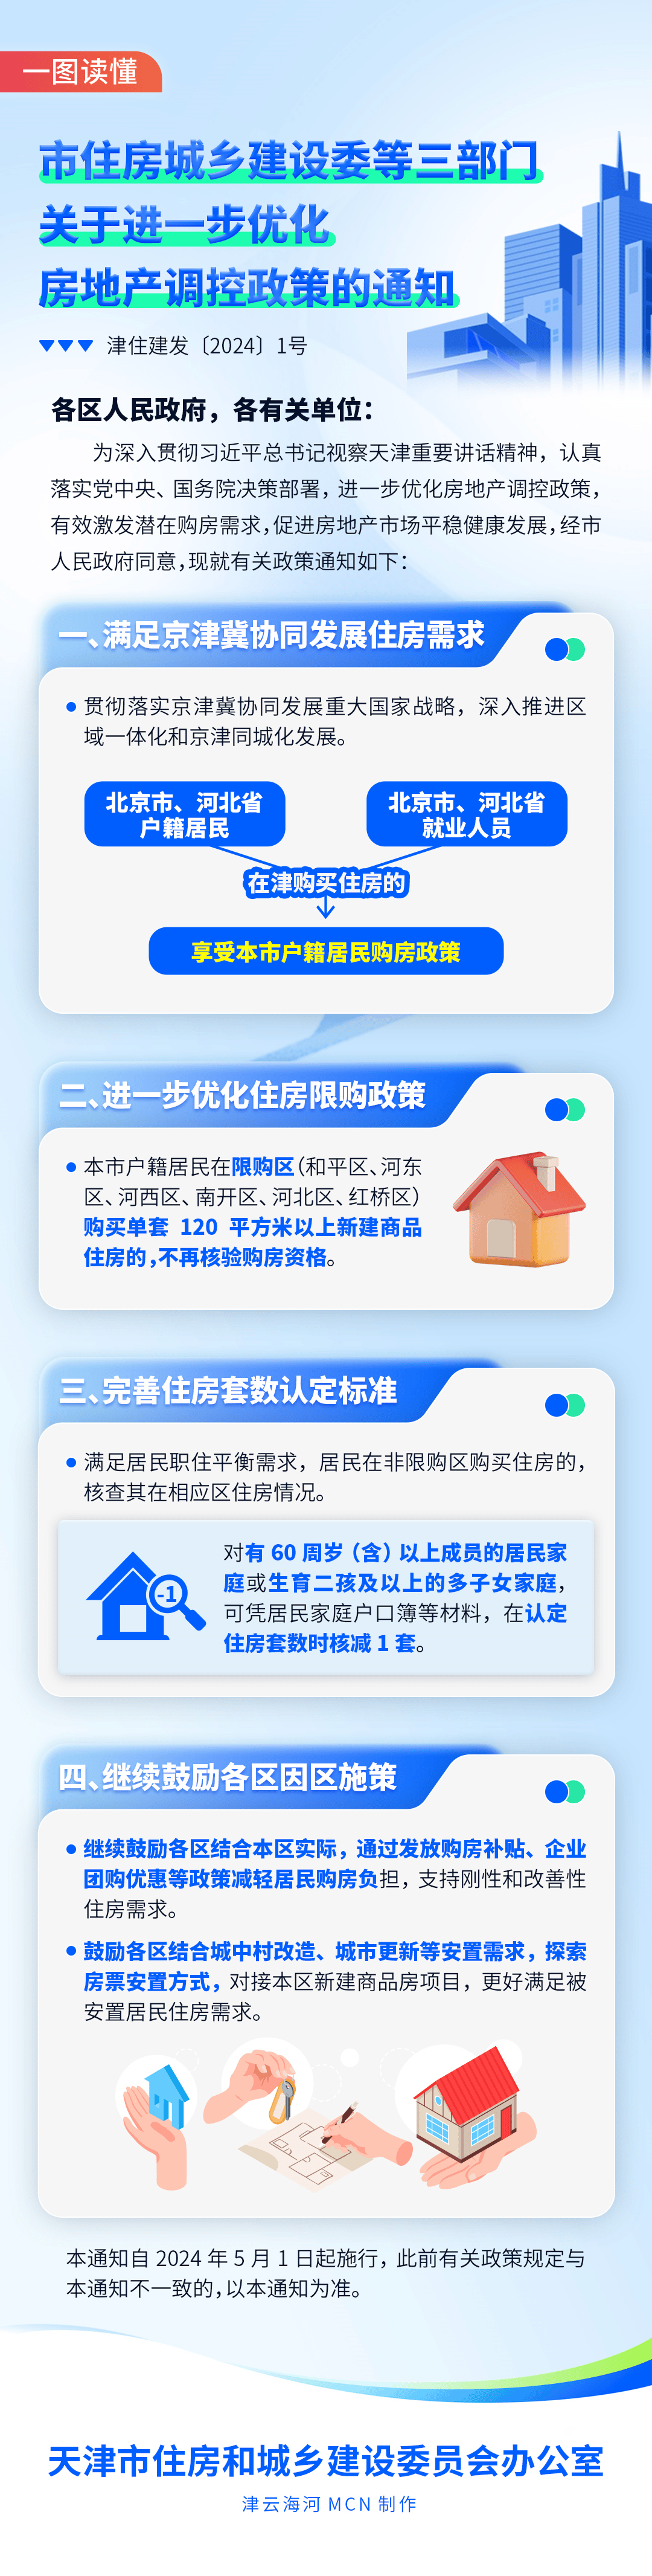 天津:北京河北户籍居民在津购买住房的,享受天津户籍居民购房政策-叭楼楼市分享网